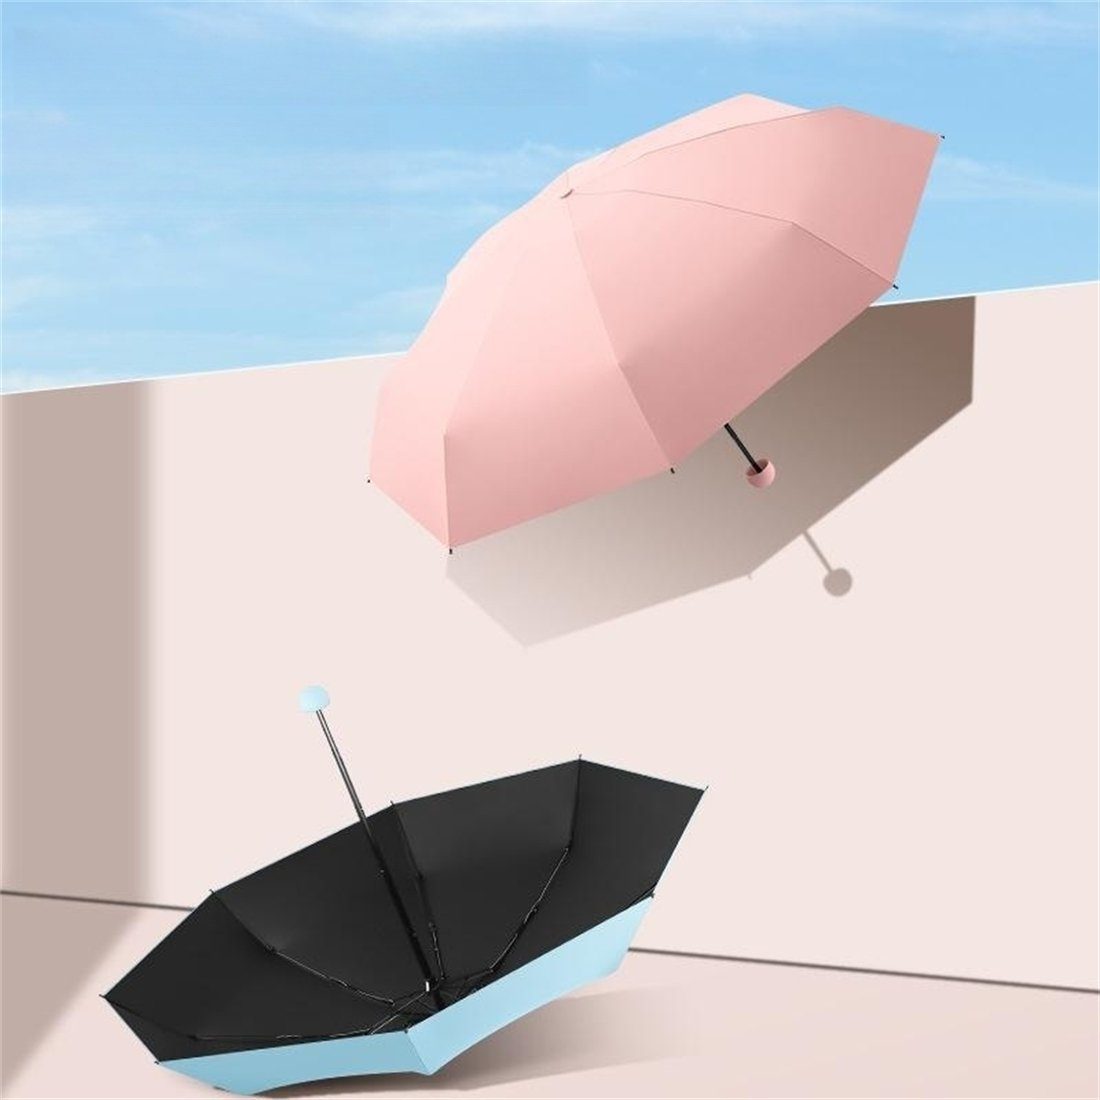 für Sycamore und für manual vor YOOdy~ klein Sonnenschutz, Apricot Taschenschirme schützt small Sonne Regenschirm UV-Schutz leicht winzig Regen Taschenregenschirm Mini unterwegs damen